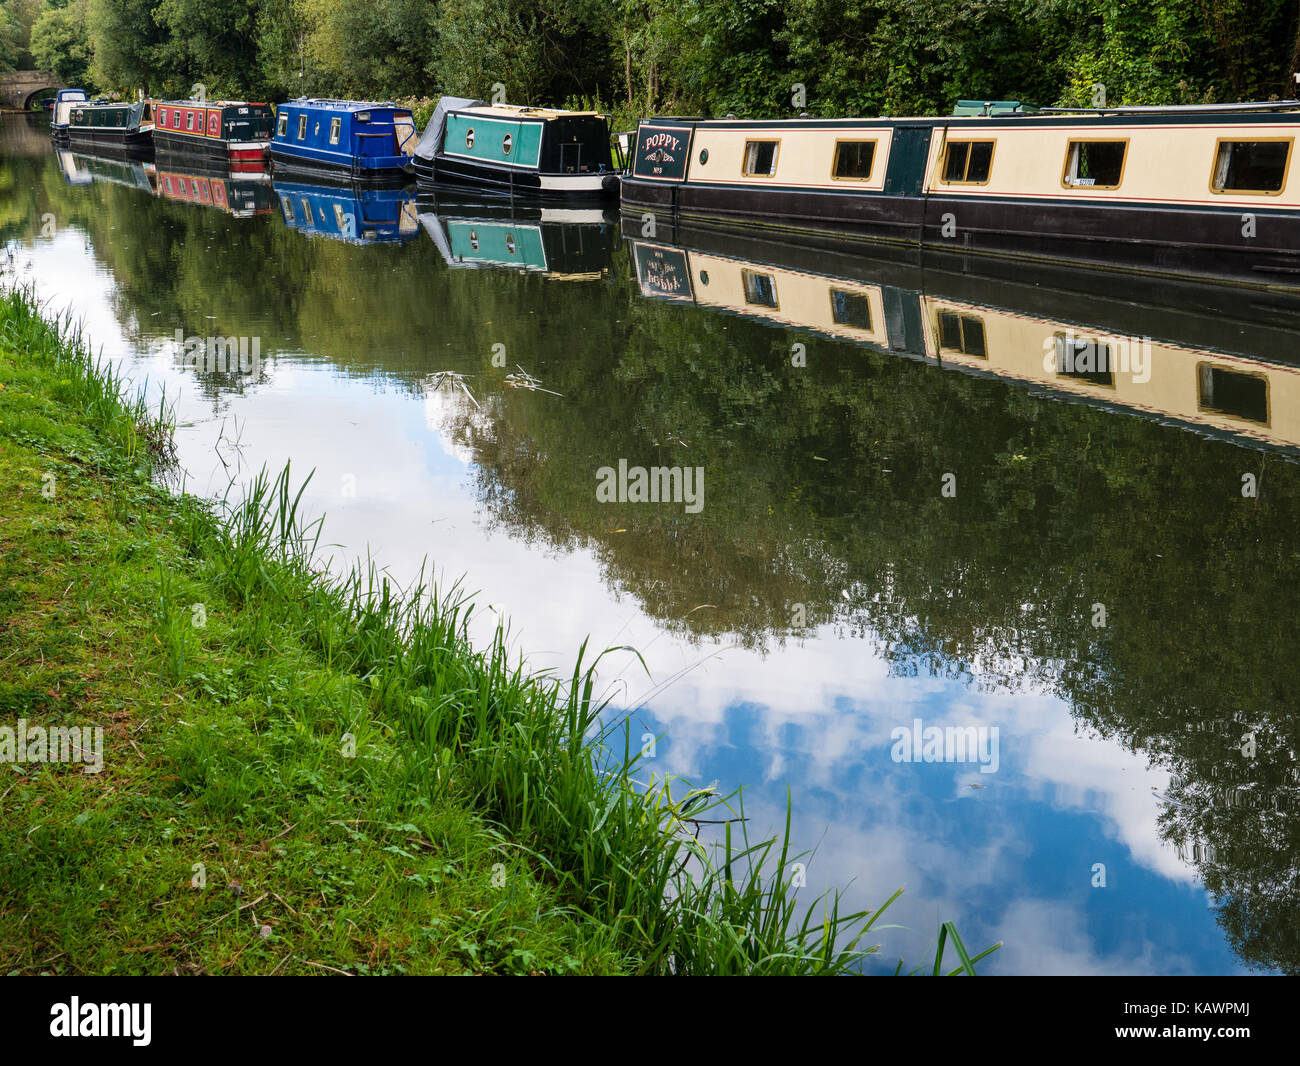 Rivière bateaux étroits kennett ,c southcote weir, Reading, Berkshire, Angleterre Banque D'Images